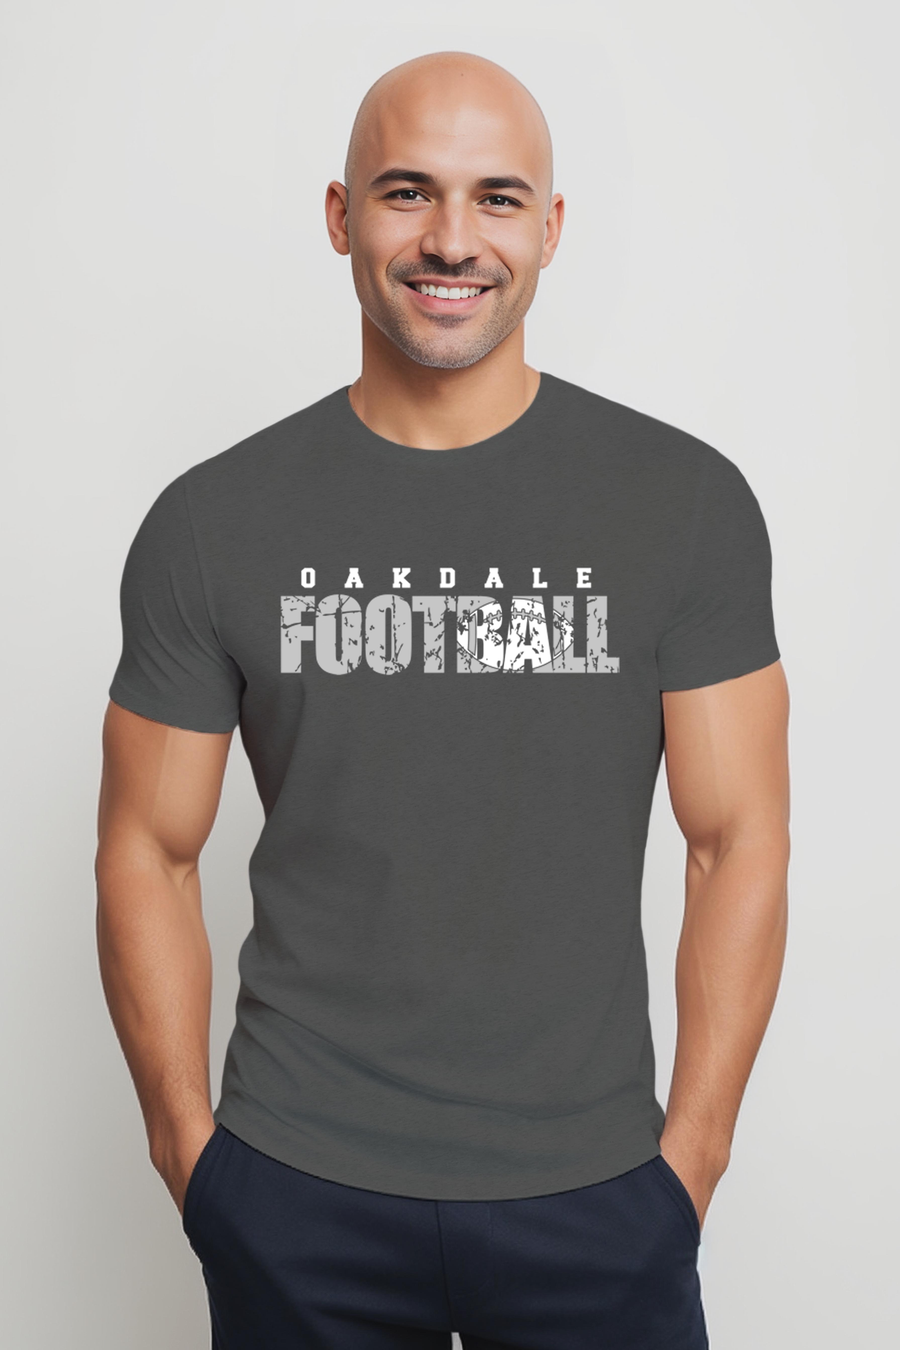 Oakdale Football- Distressed Design- Asphalt Shirt (OMS)